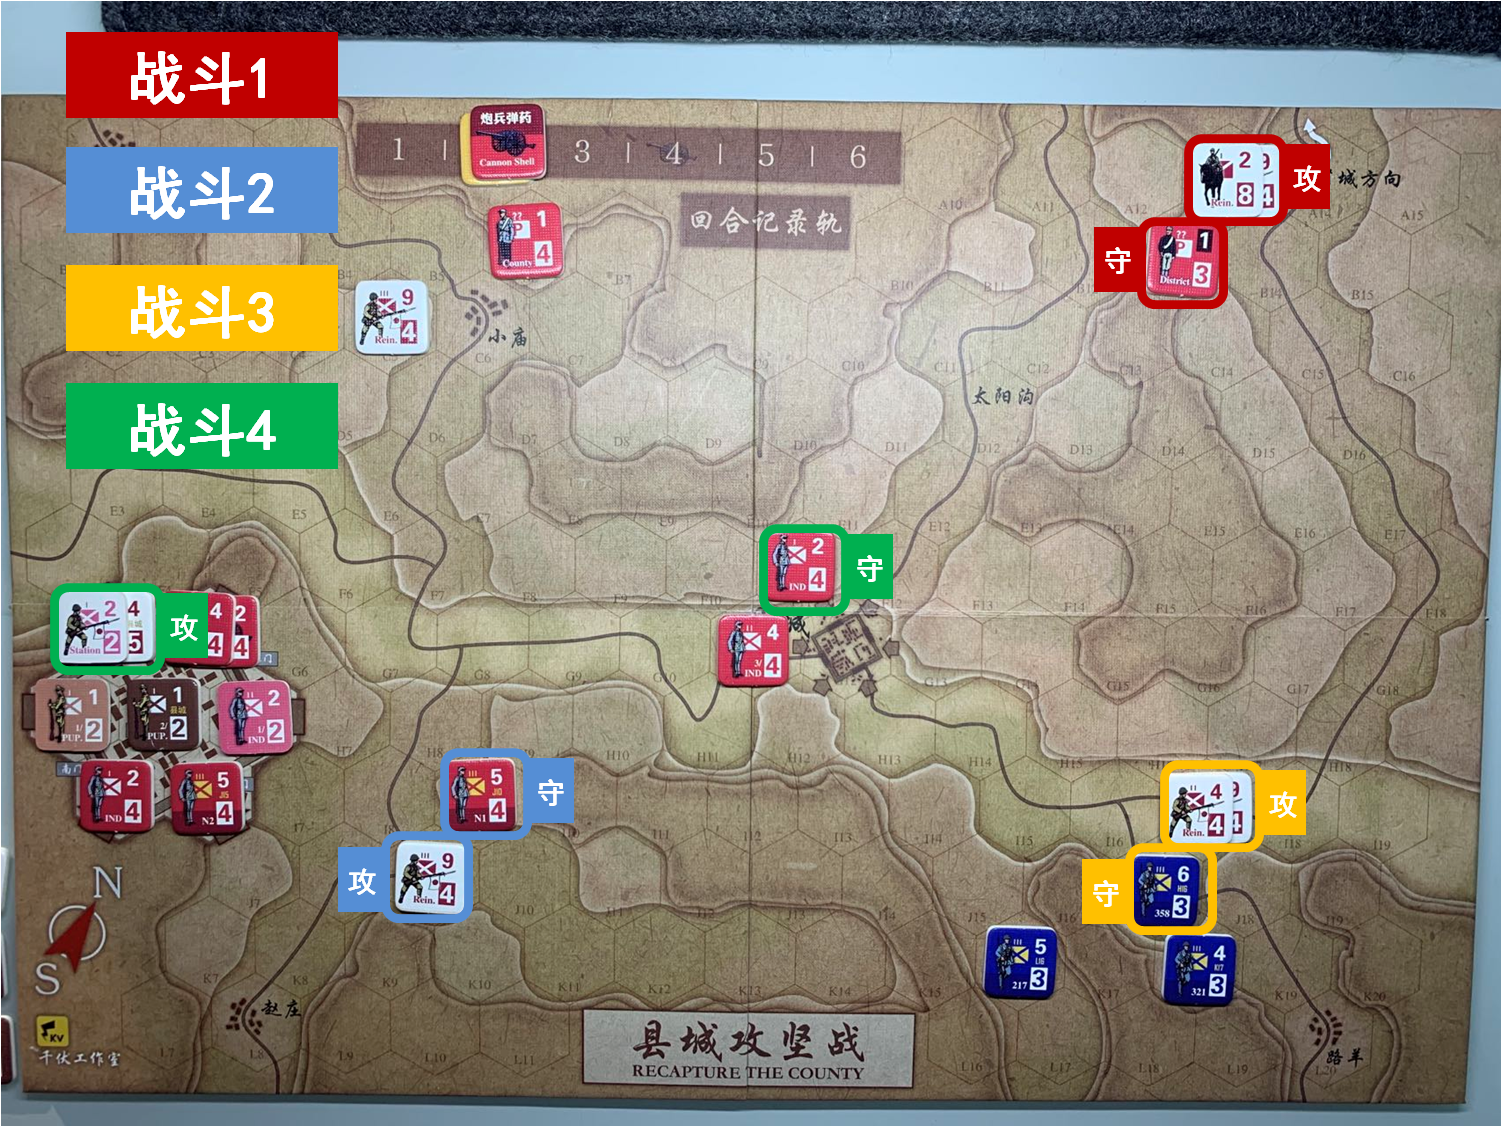 第二回合 日方战斗阶段 战斗计划